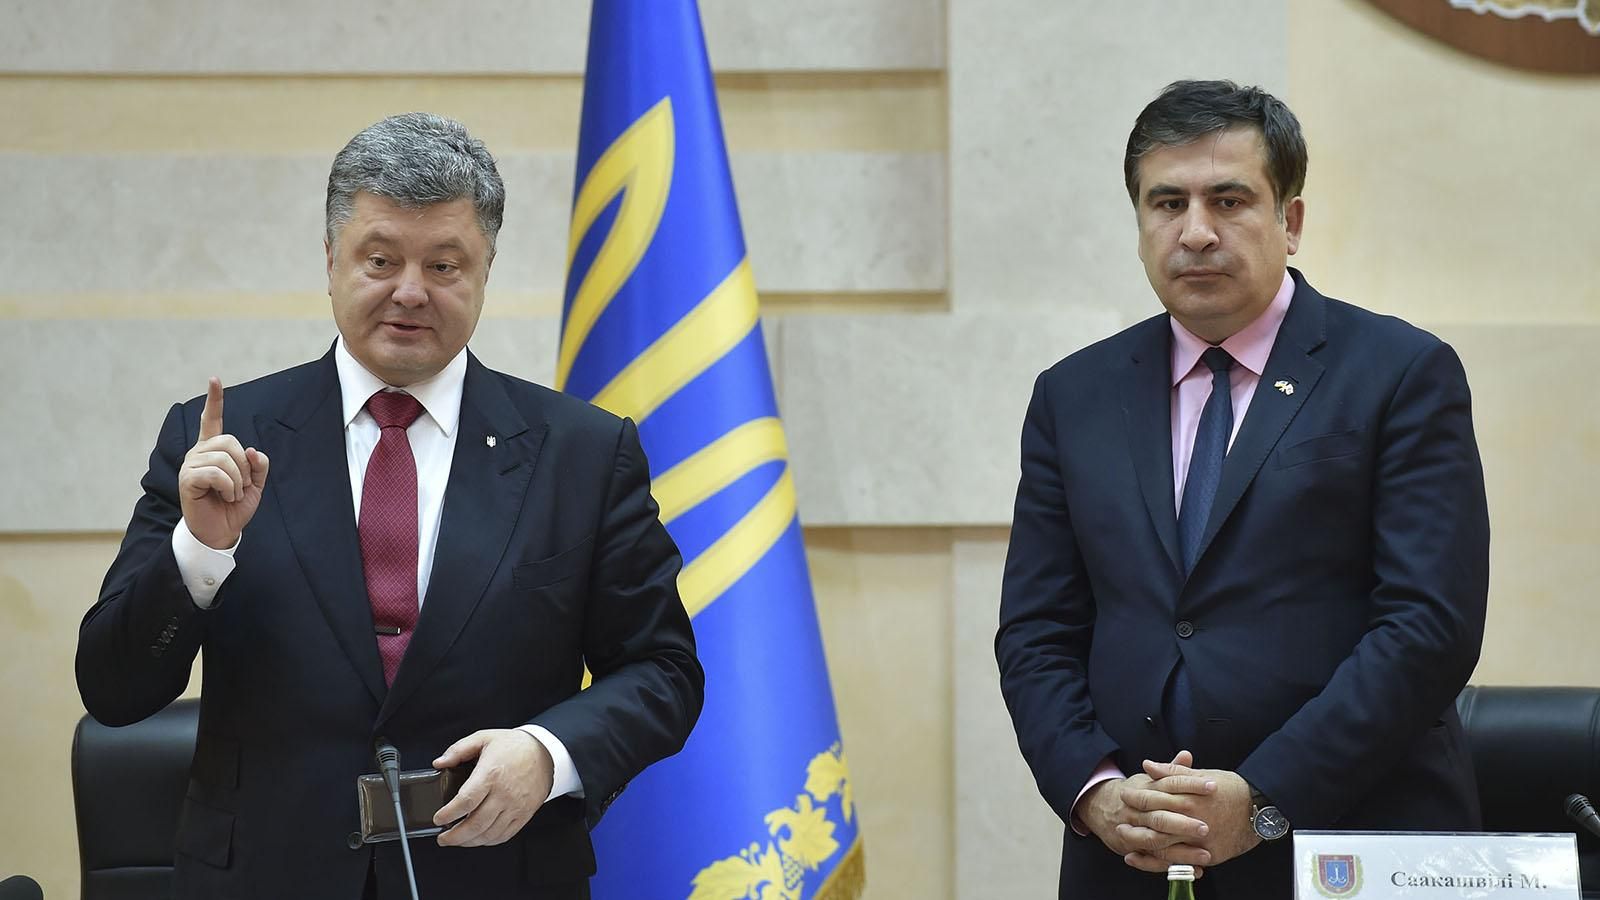 Саакашвили написал письмо Порошенко: "Нельзя допустить шабаш реваншистов"